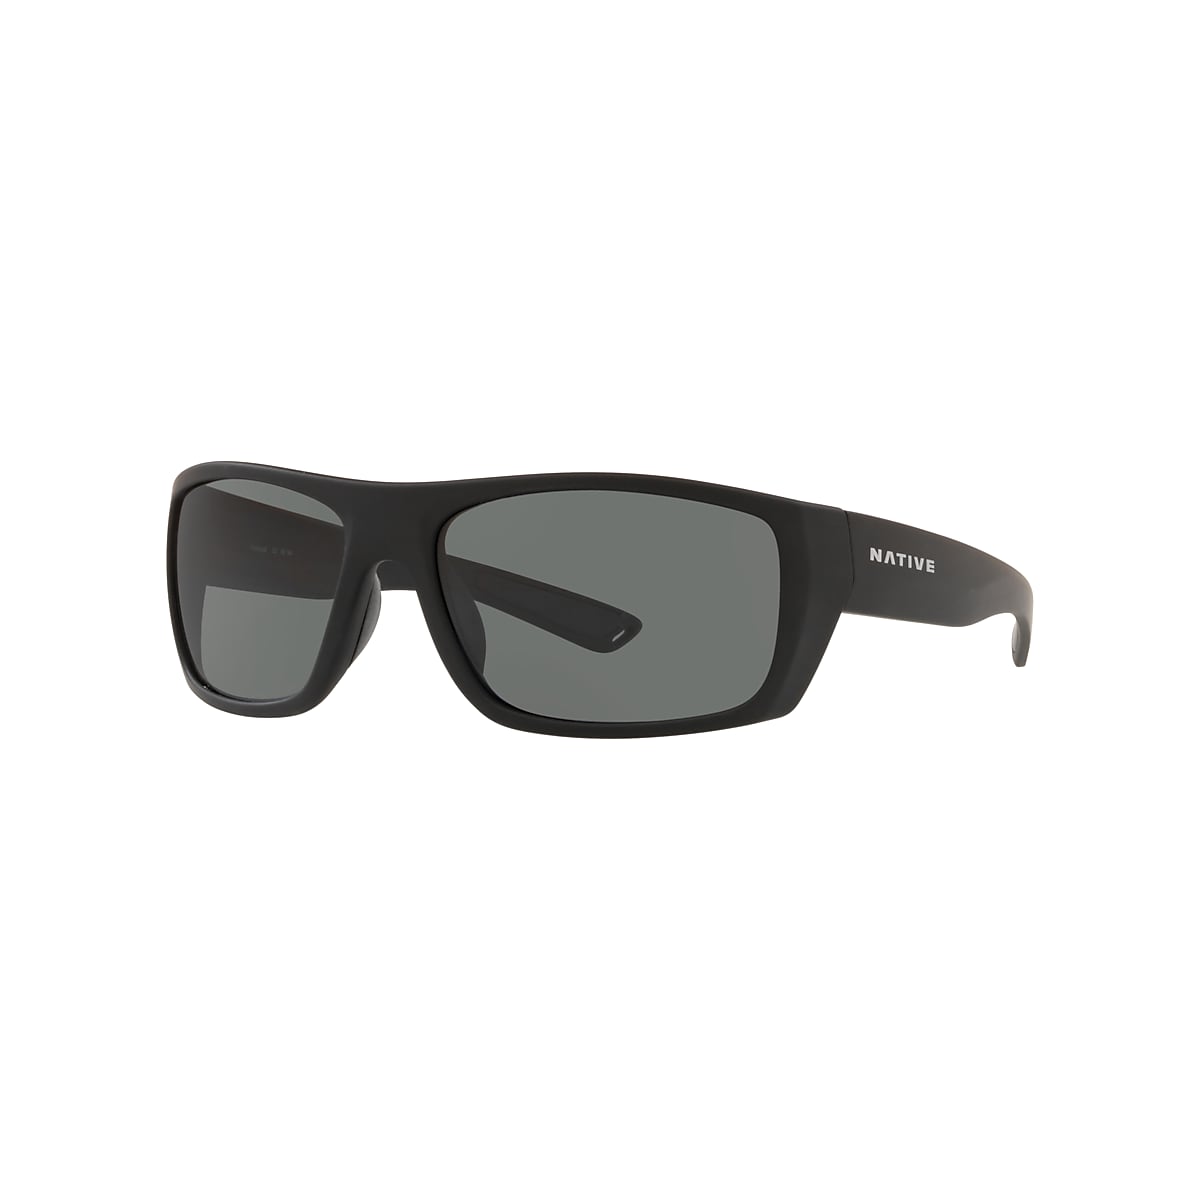 Distiller Sunglasses in Grey | Native Eyewear®